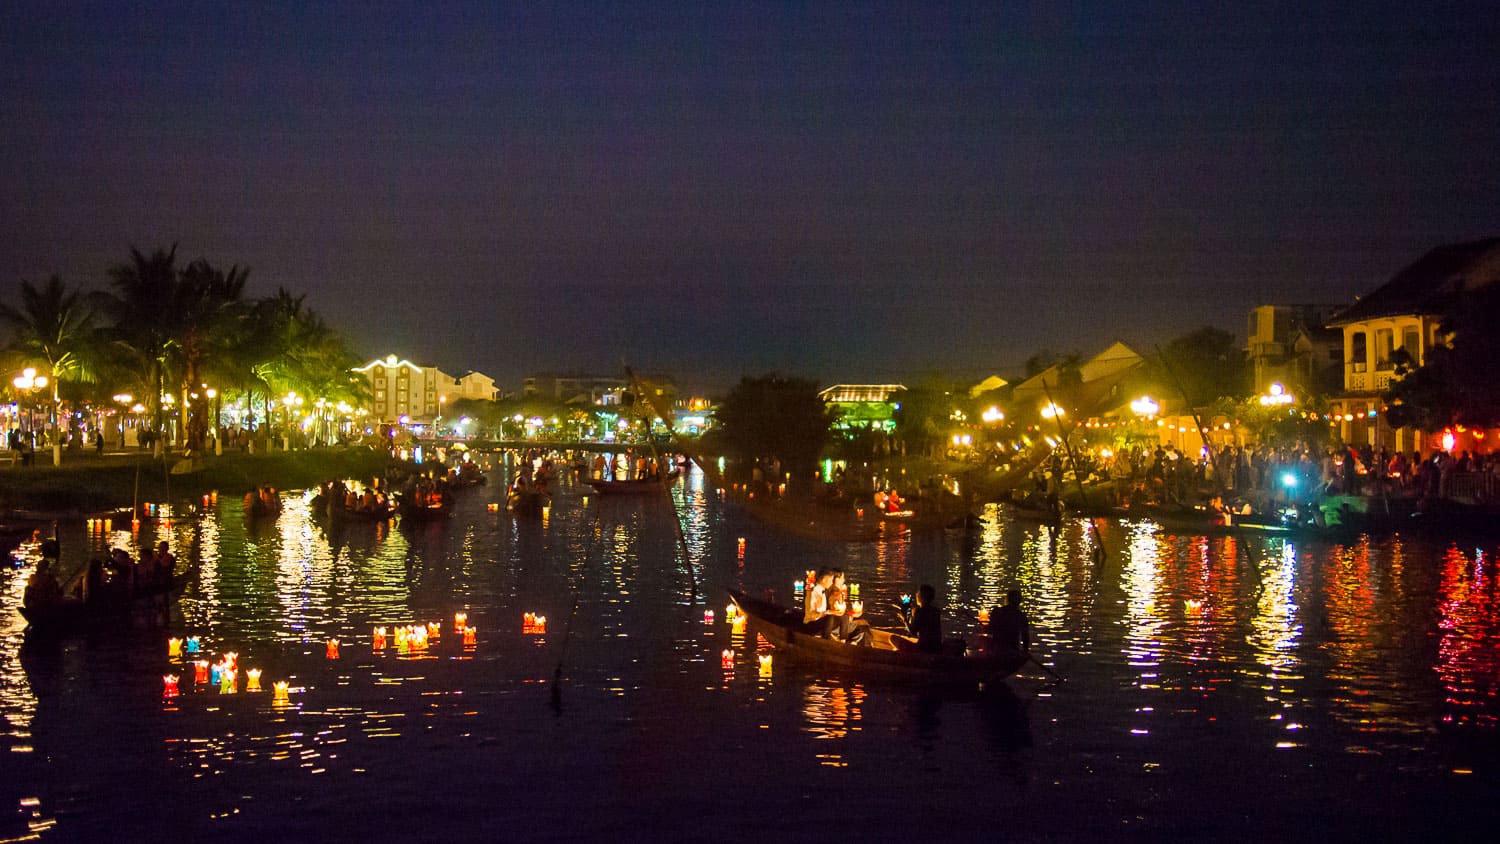 The Full Moon Festival in Hoi An